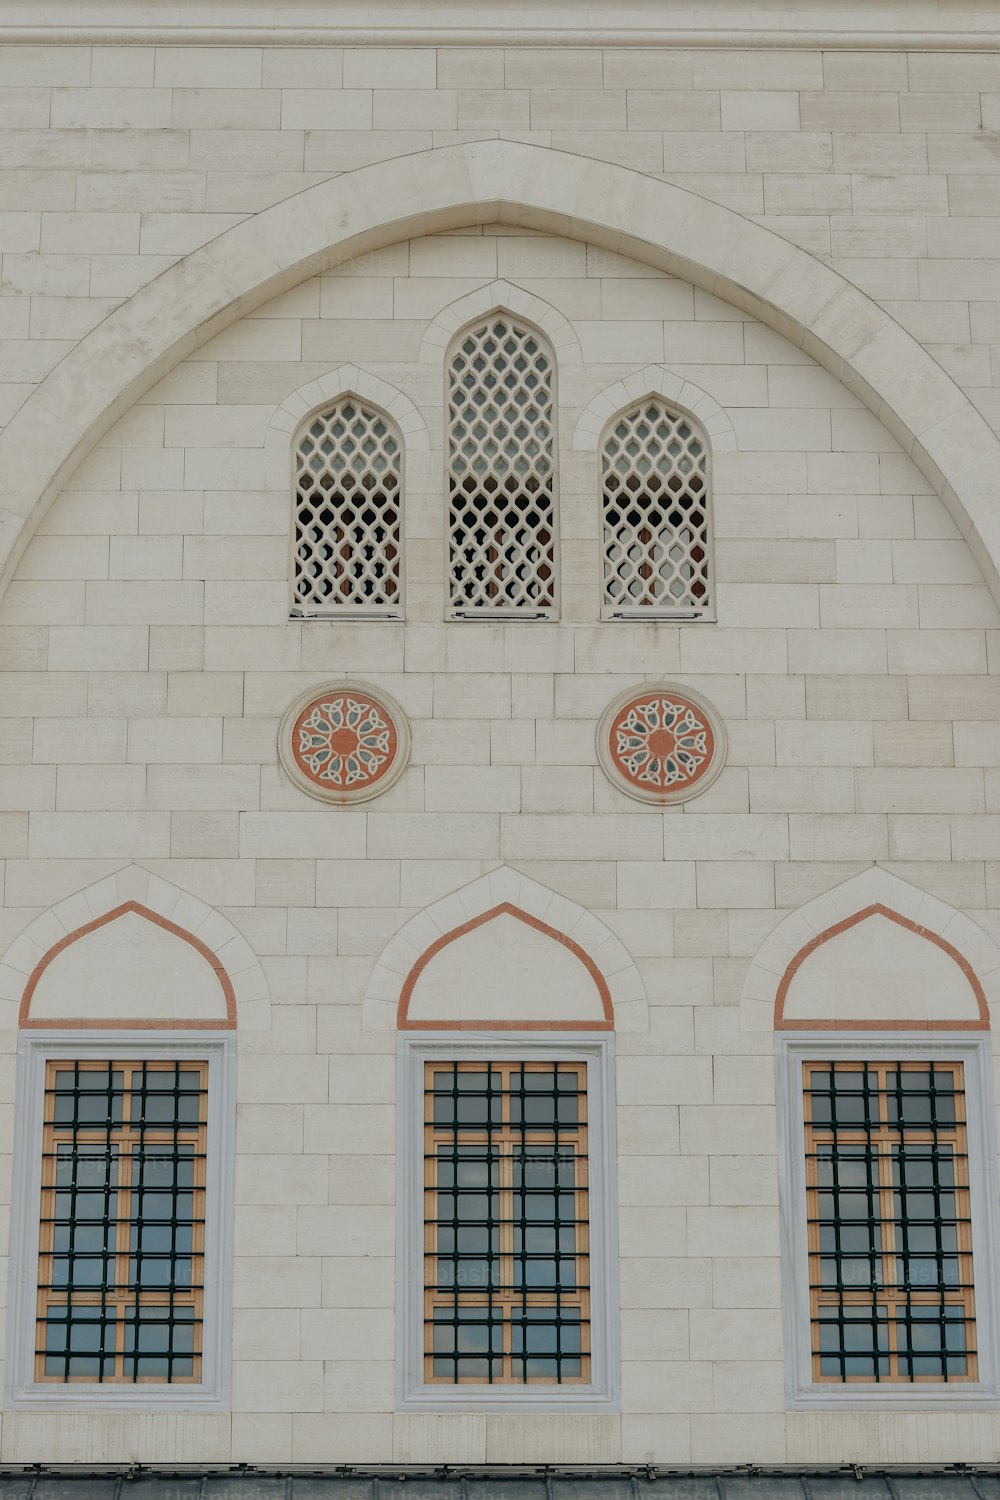 アーチ型の窓と時計のある白いレンガ造りの建物